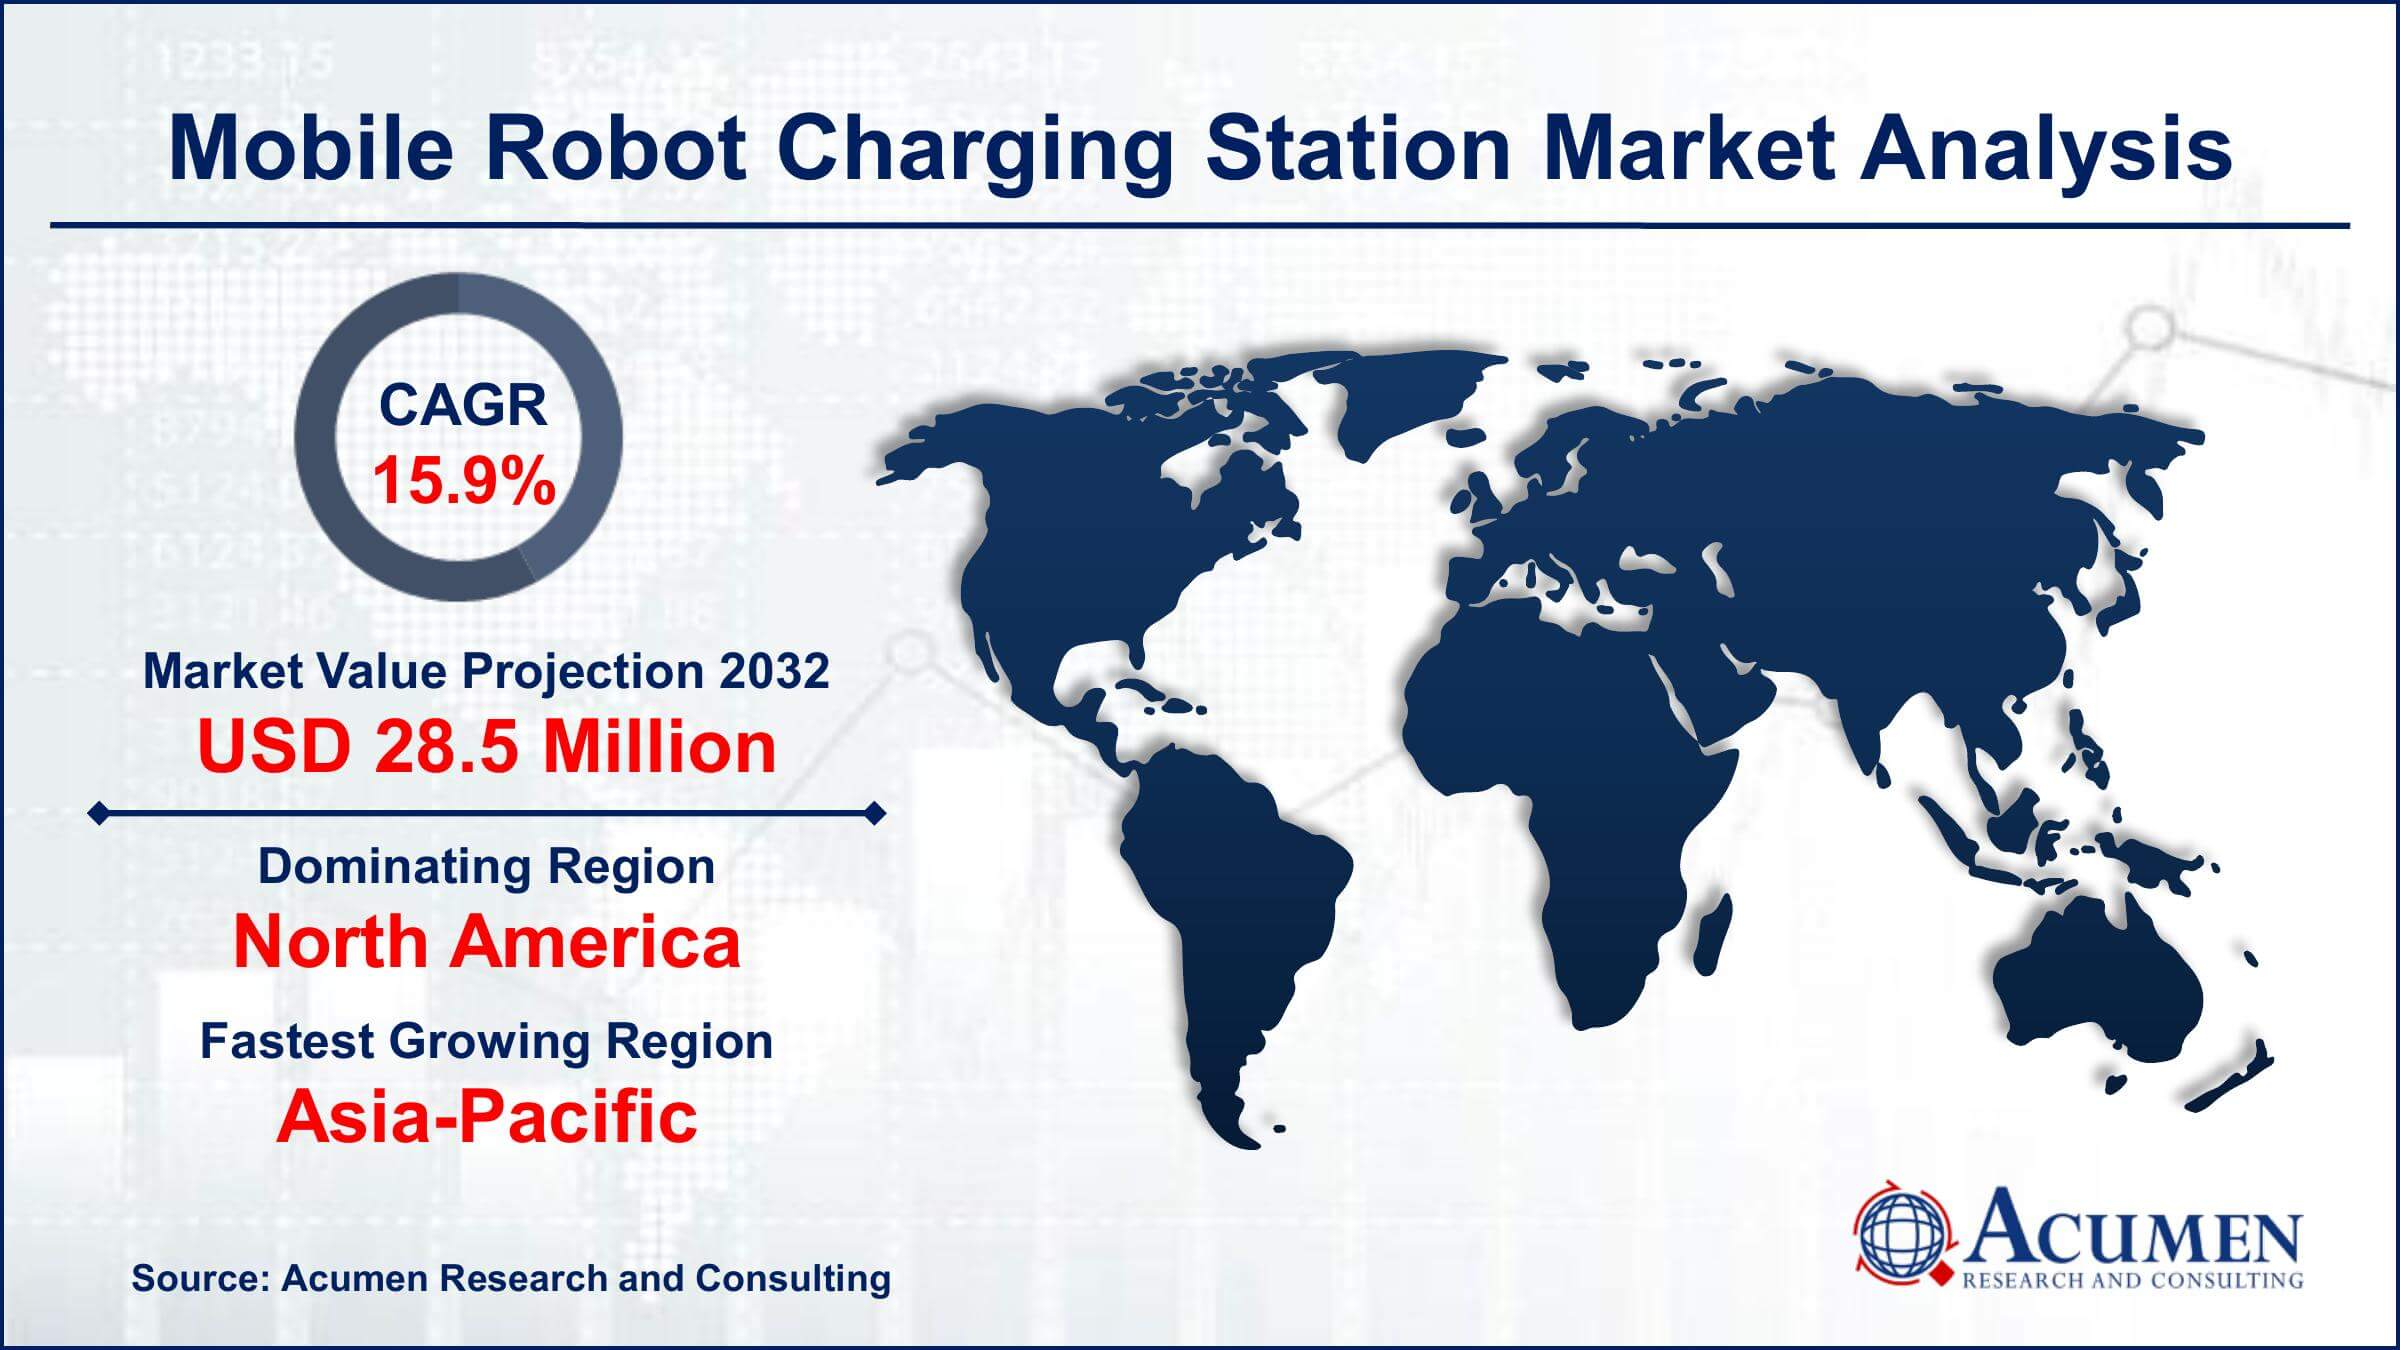 Global Mobile Robot Charging Station Market Trends